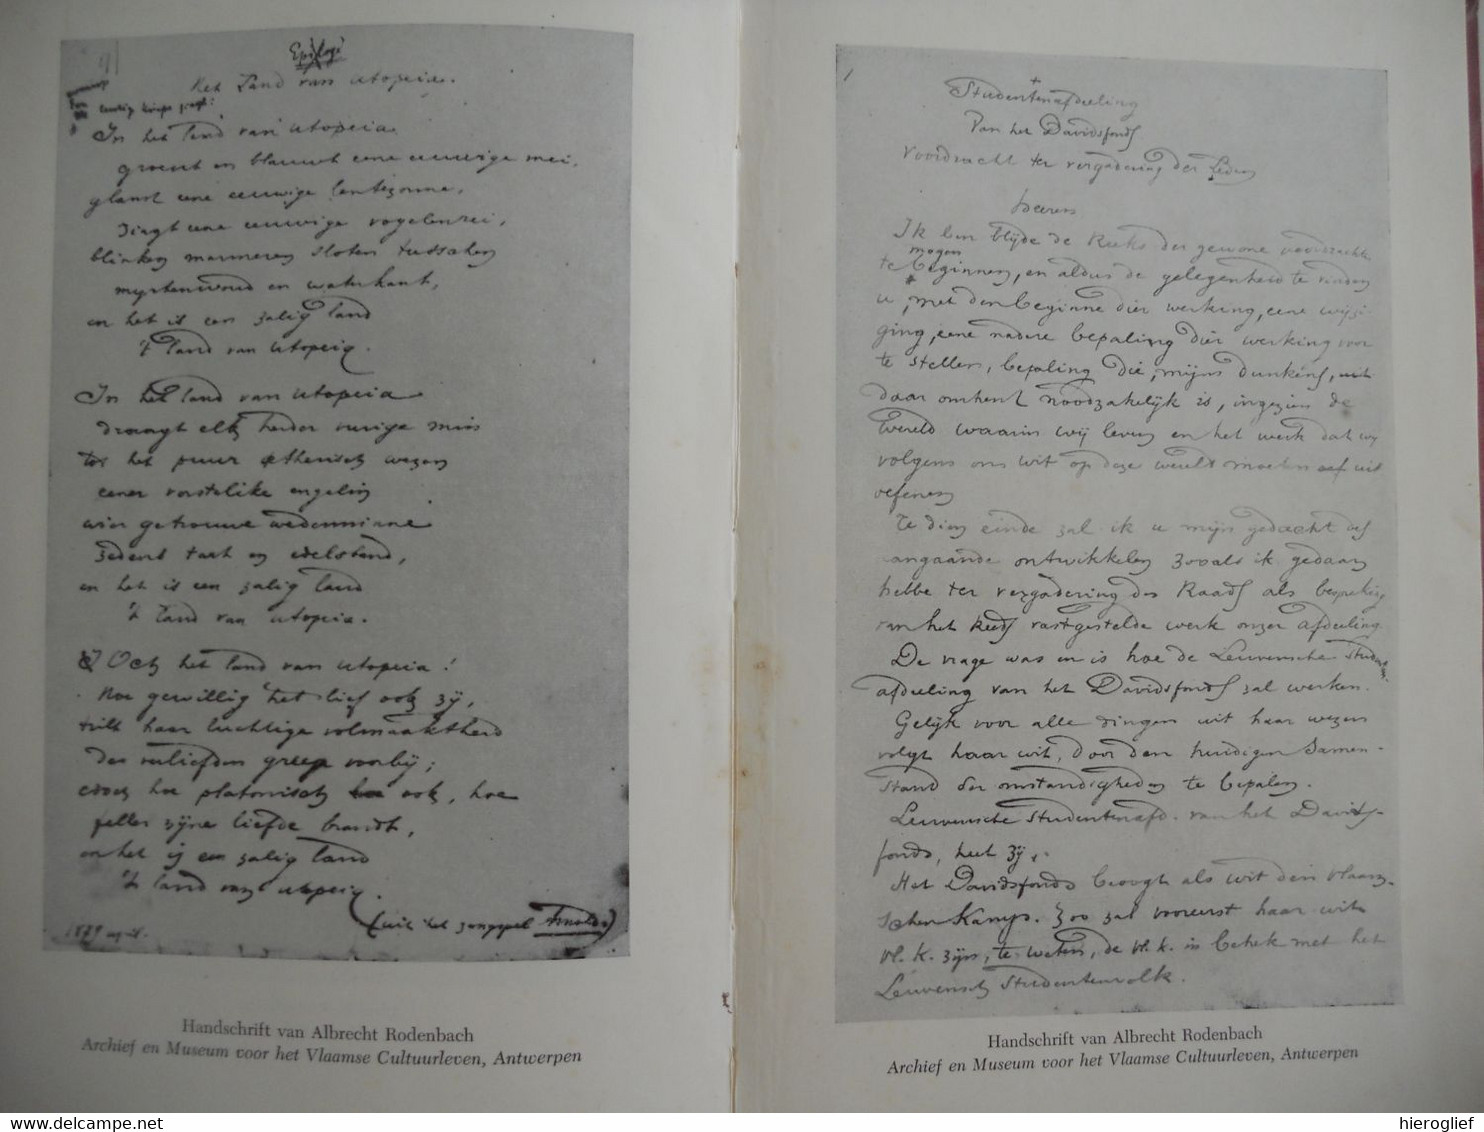 ALBRECHT RODENBACH 1856 1880 monografie door Albert Westerlinck / roeselare vlaanderen vlaamse beweging